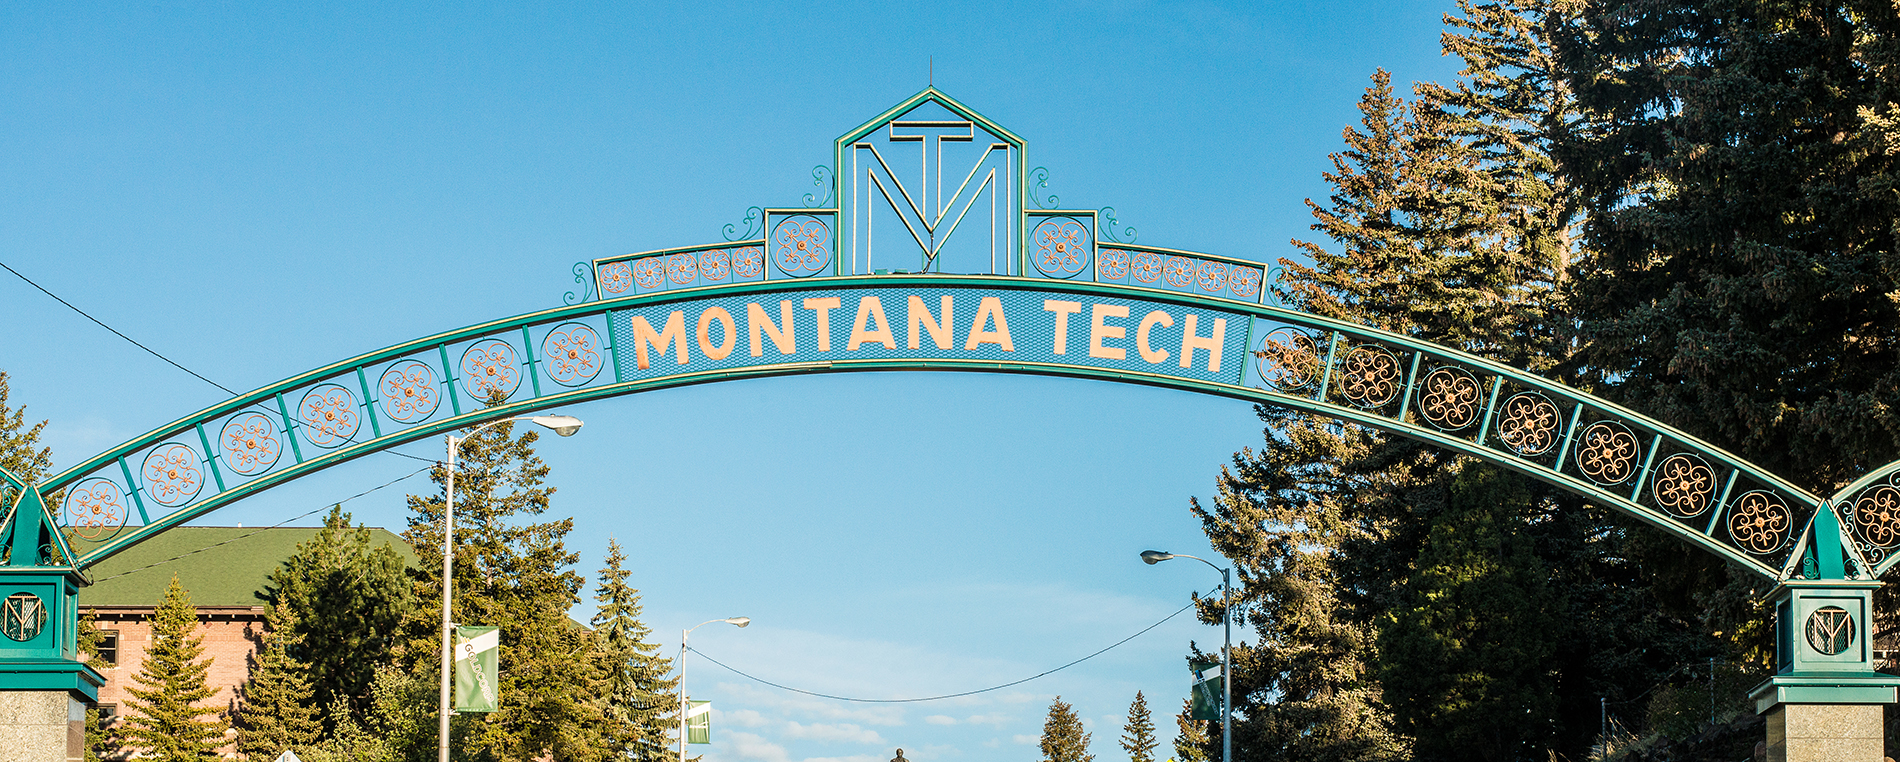 Montana Tech accolades